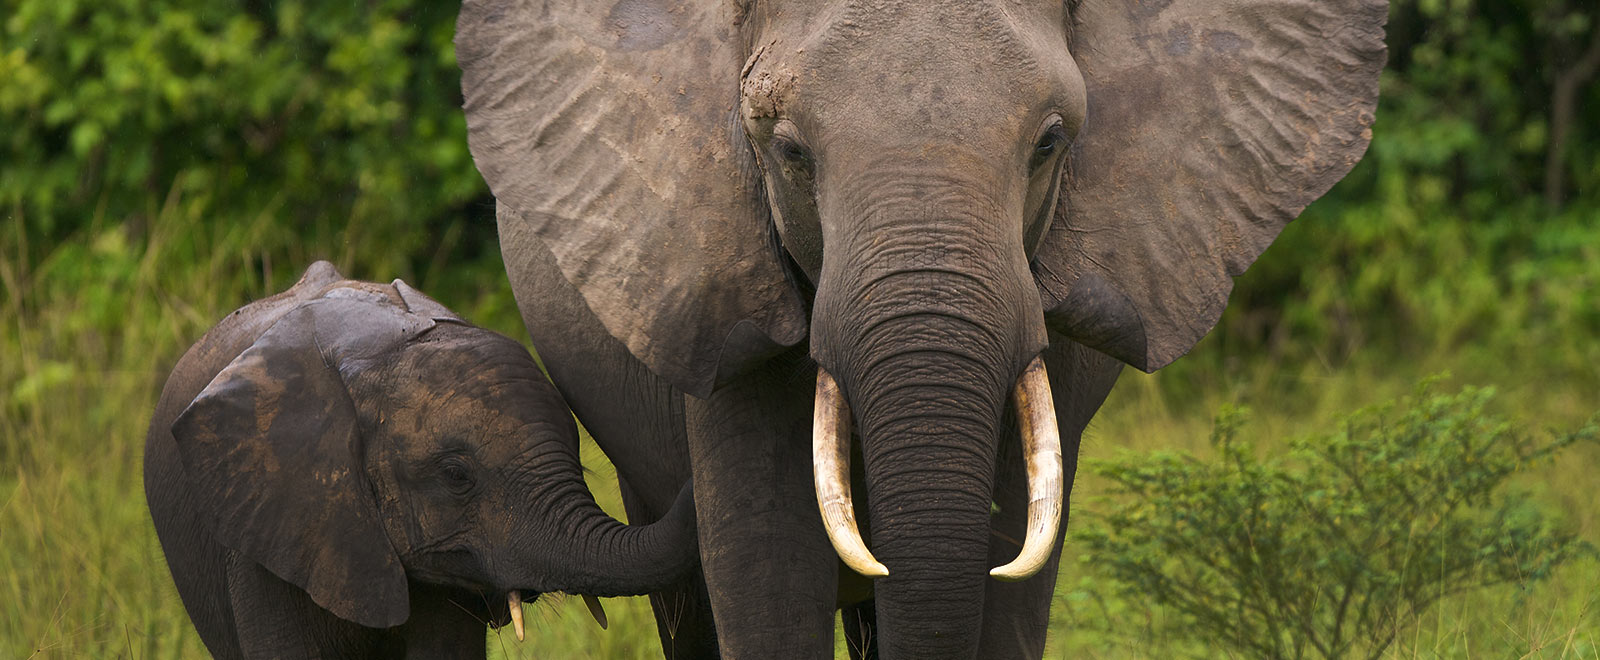 Πεινασμένος ελέφαντας τρομοκράτησε ολόκληρο χωριό ενώ ο ίδιος έψαχνε για τροφή